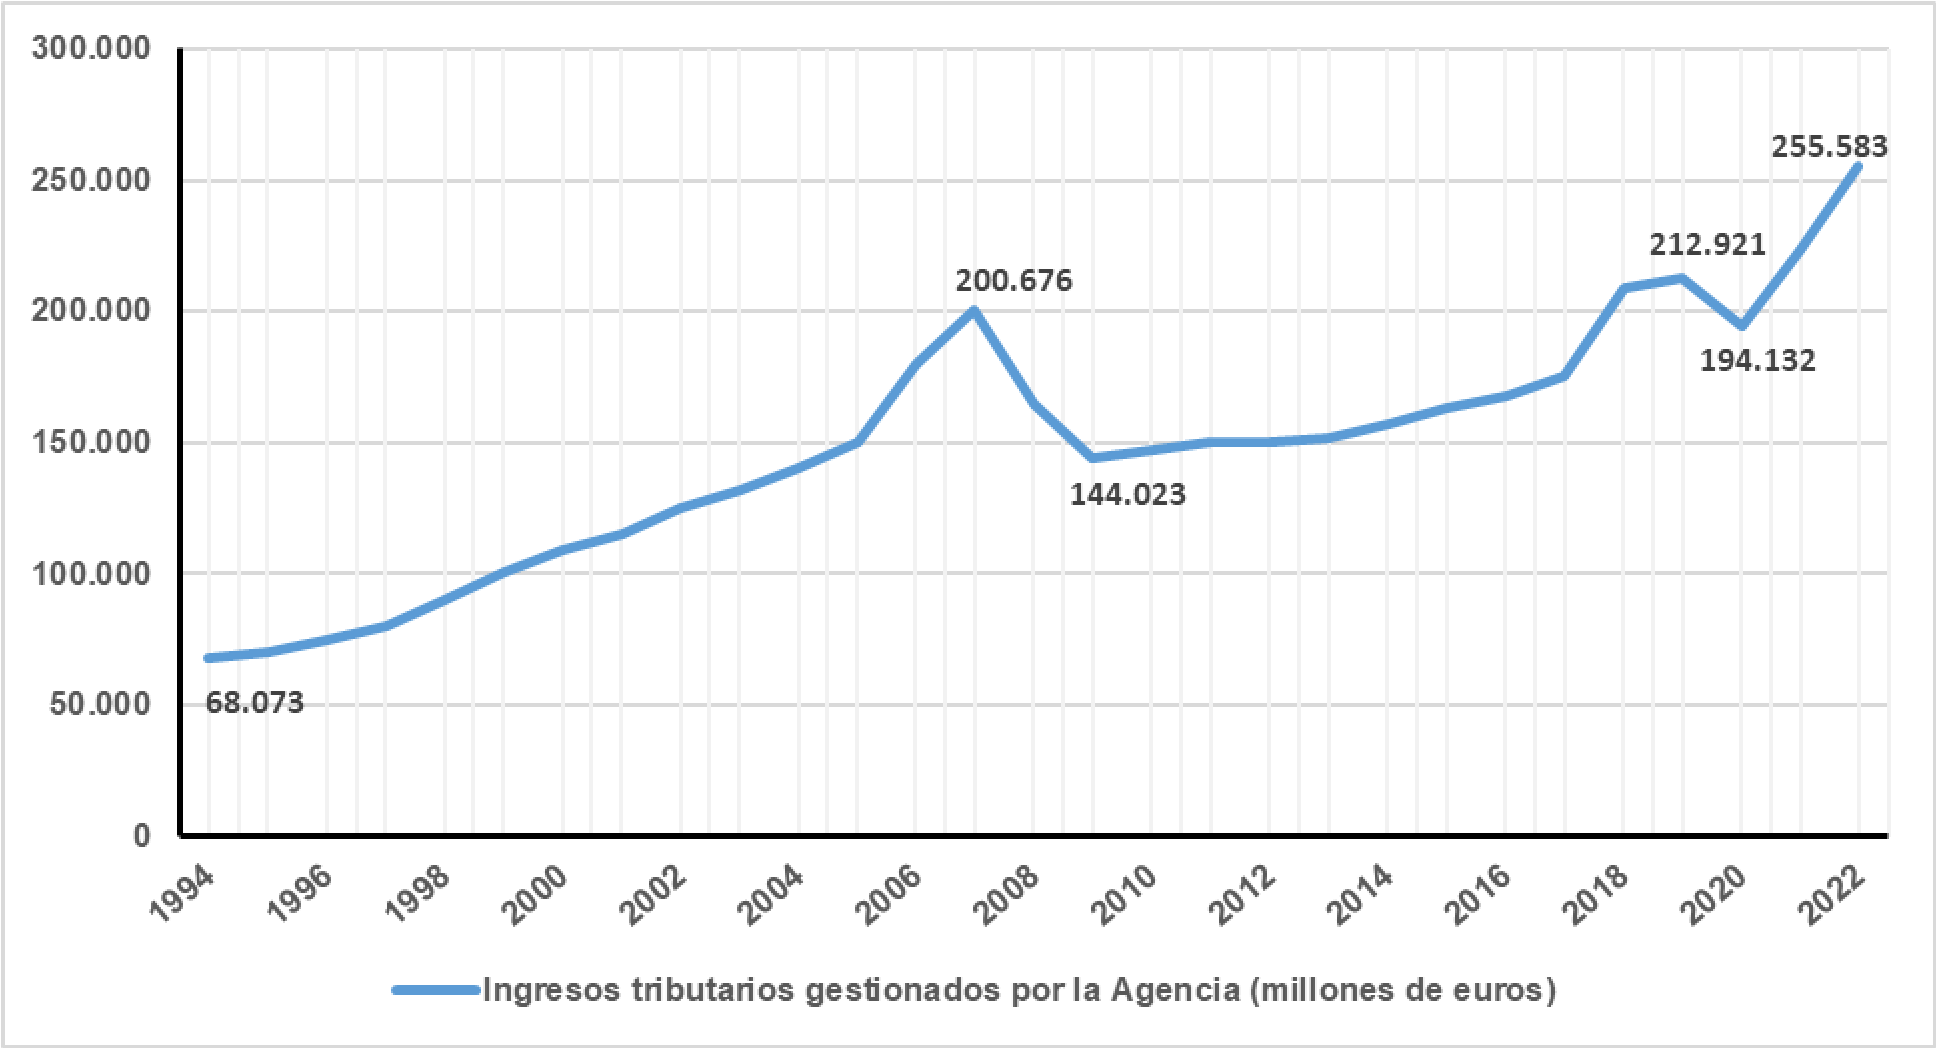 Gráfico de Ingresos tributarios gestionados por la Agencia en millones de euros